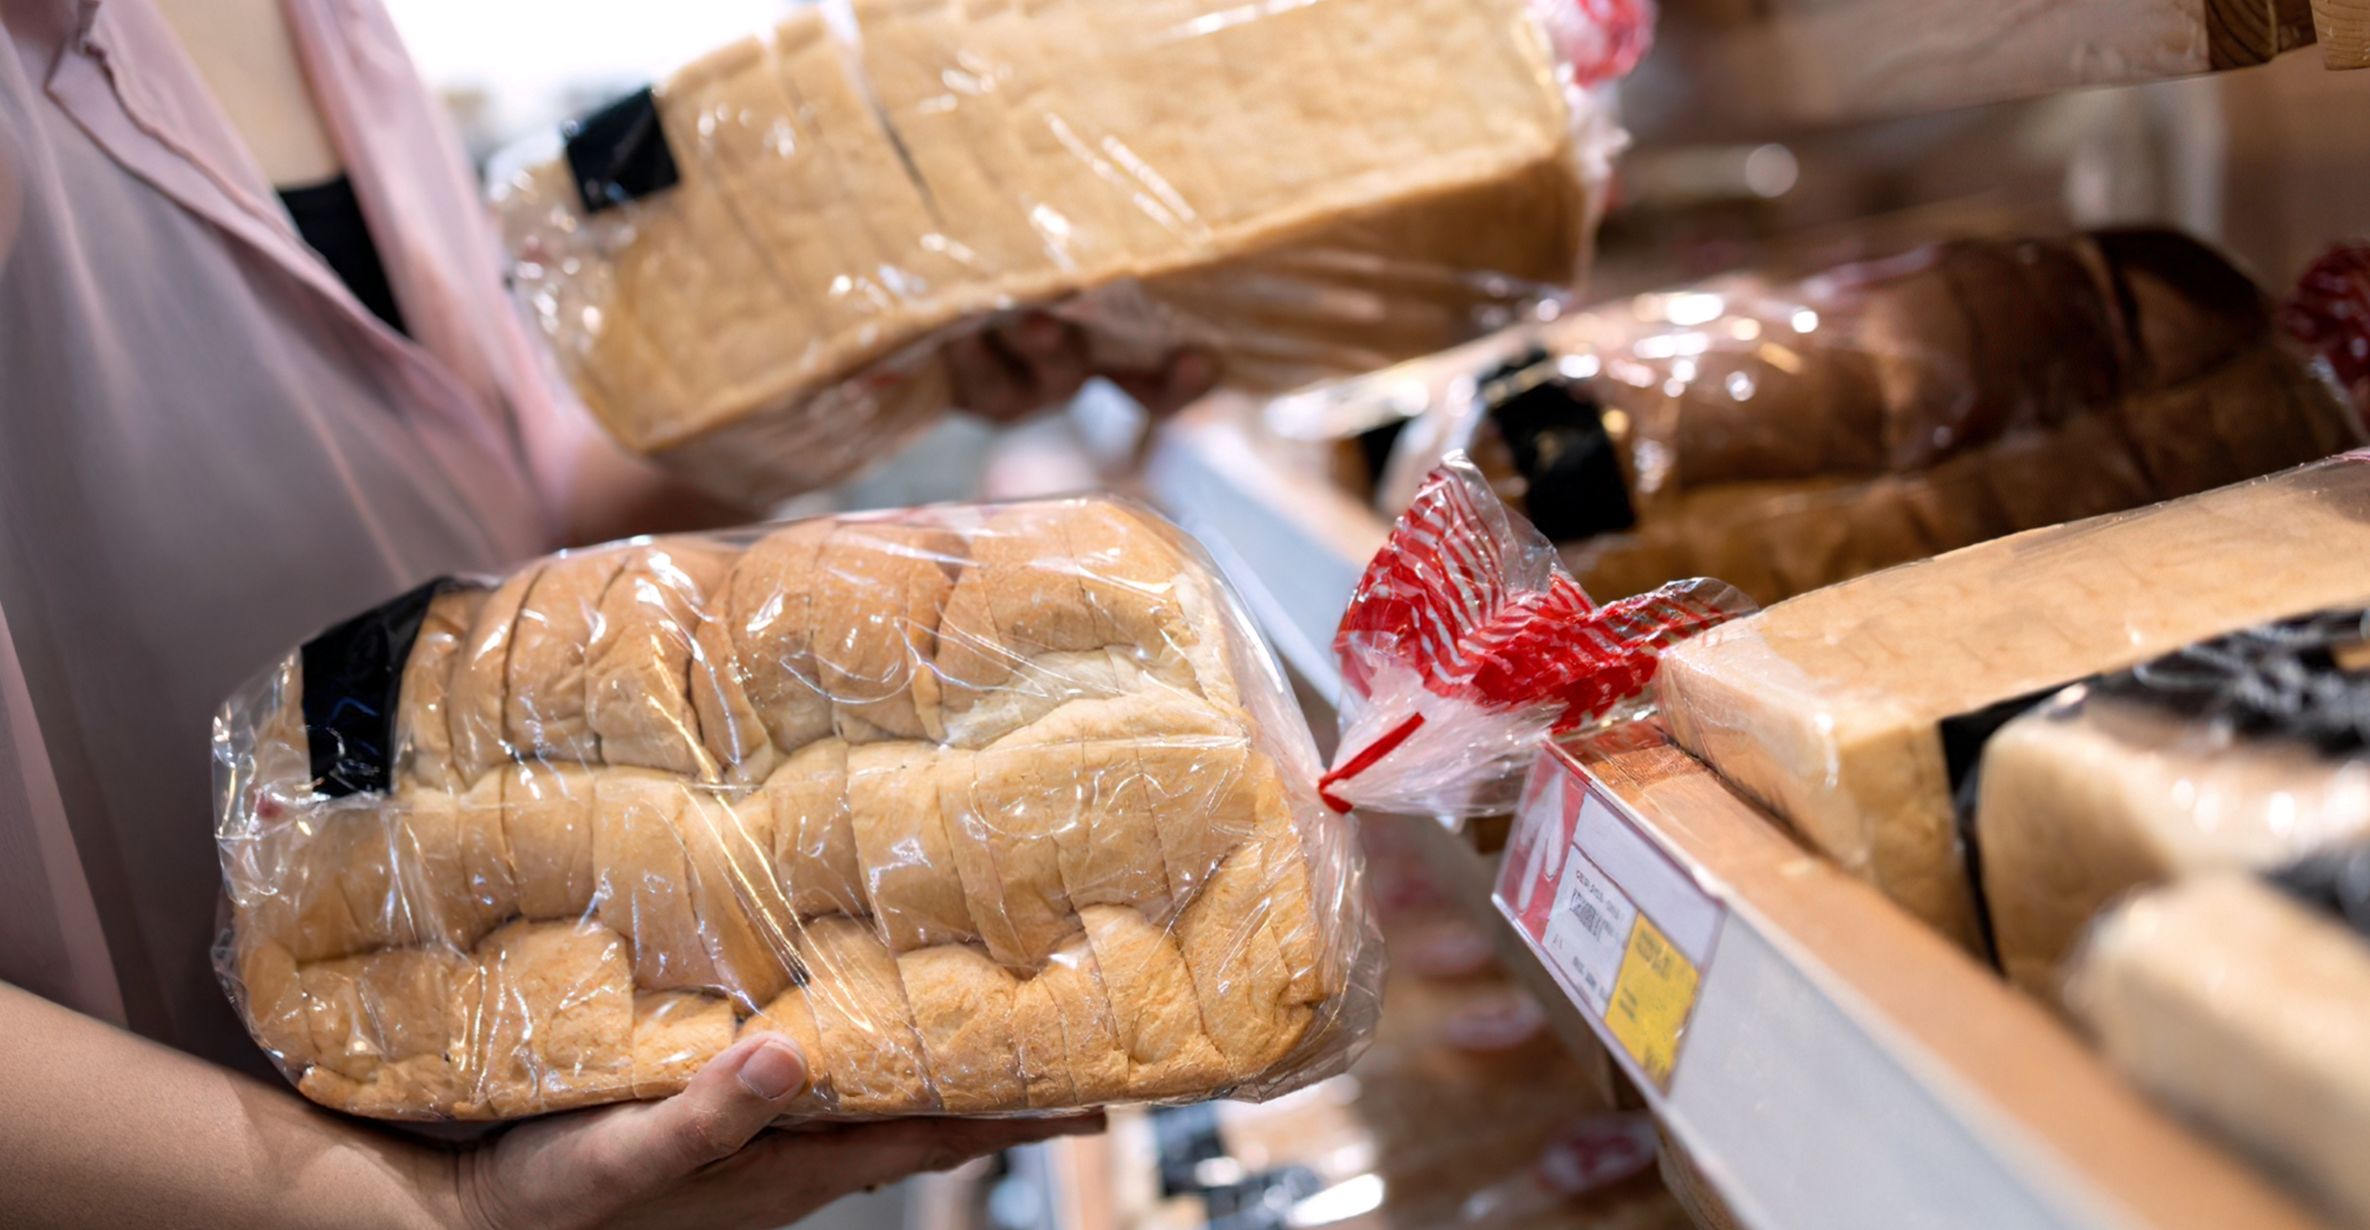 Так вот почему сотрудники хлебозавода не советуют покупать нарезанный хлеб